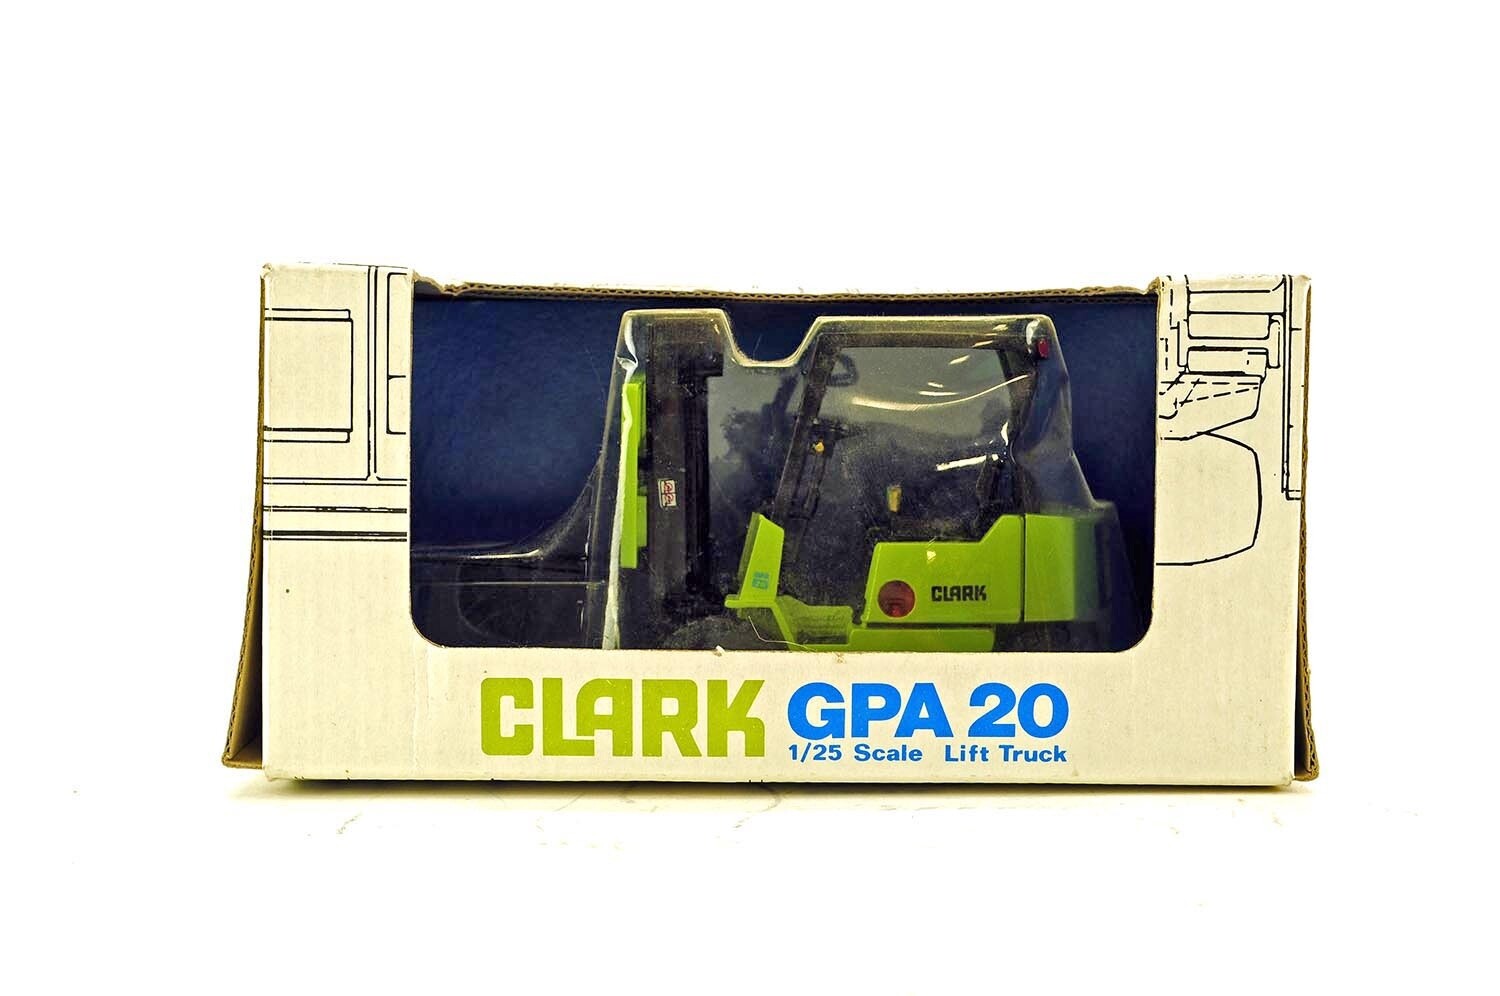 Clark GPA 20 Lift Truck - 1:25